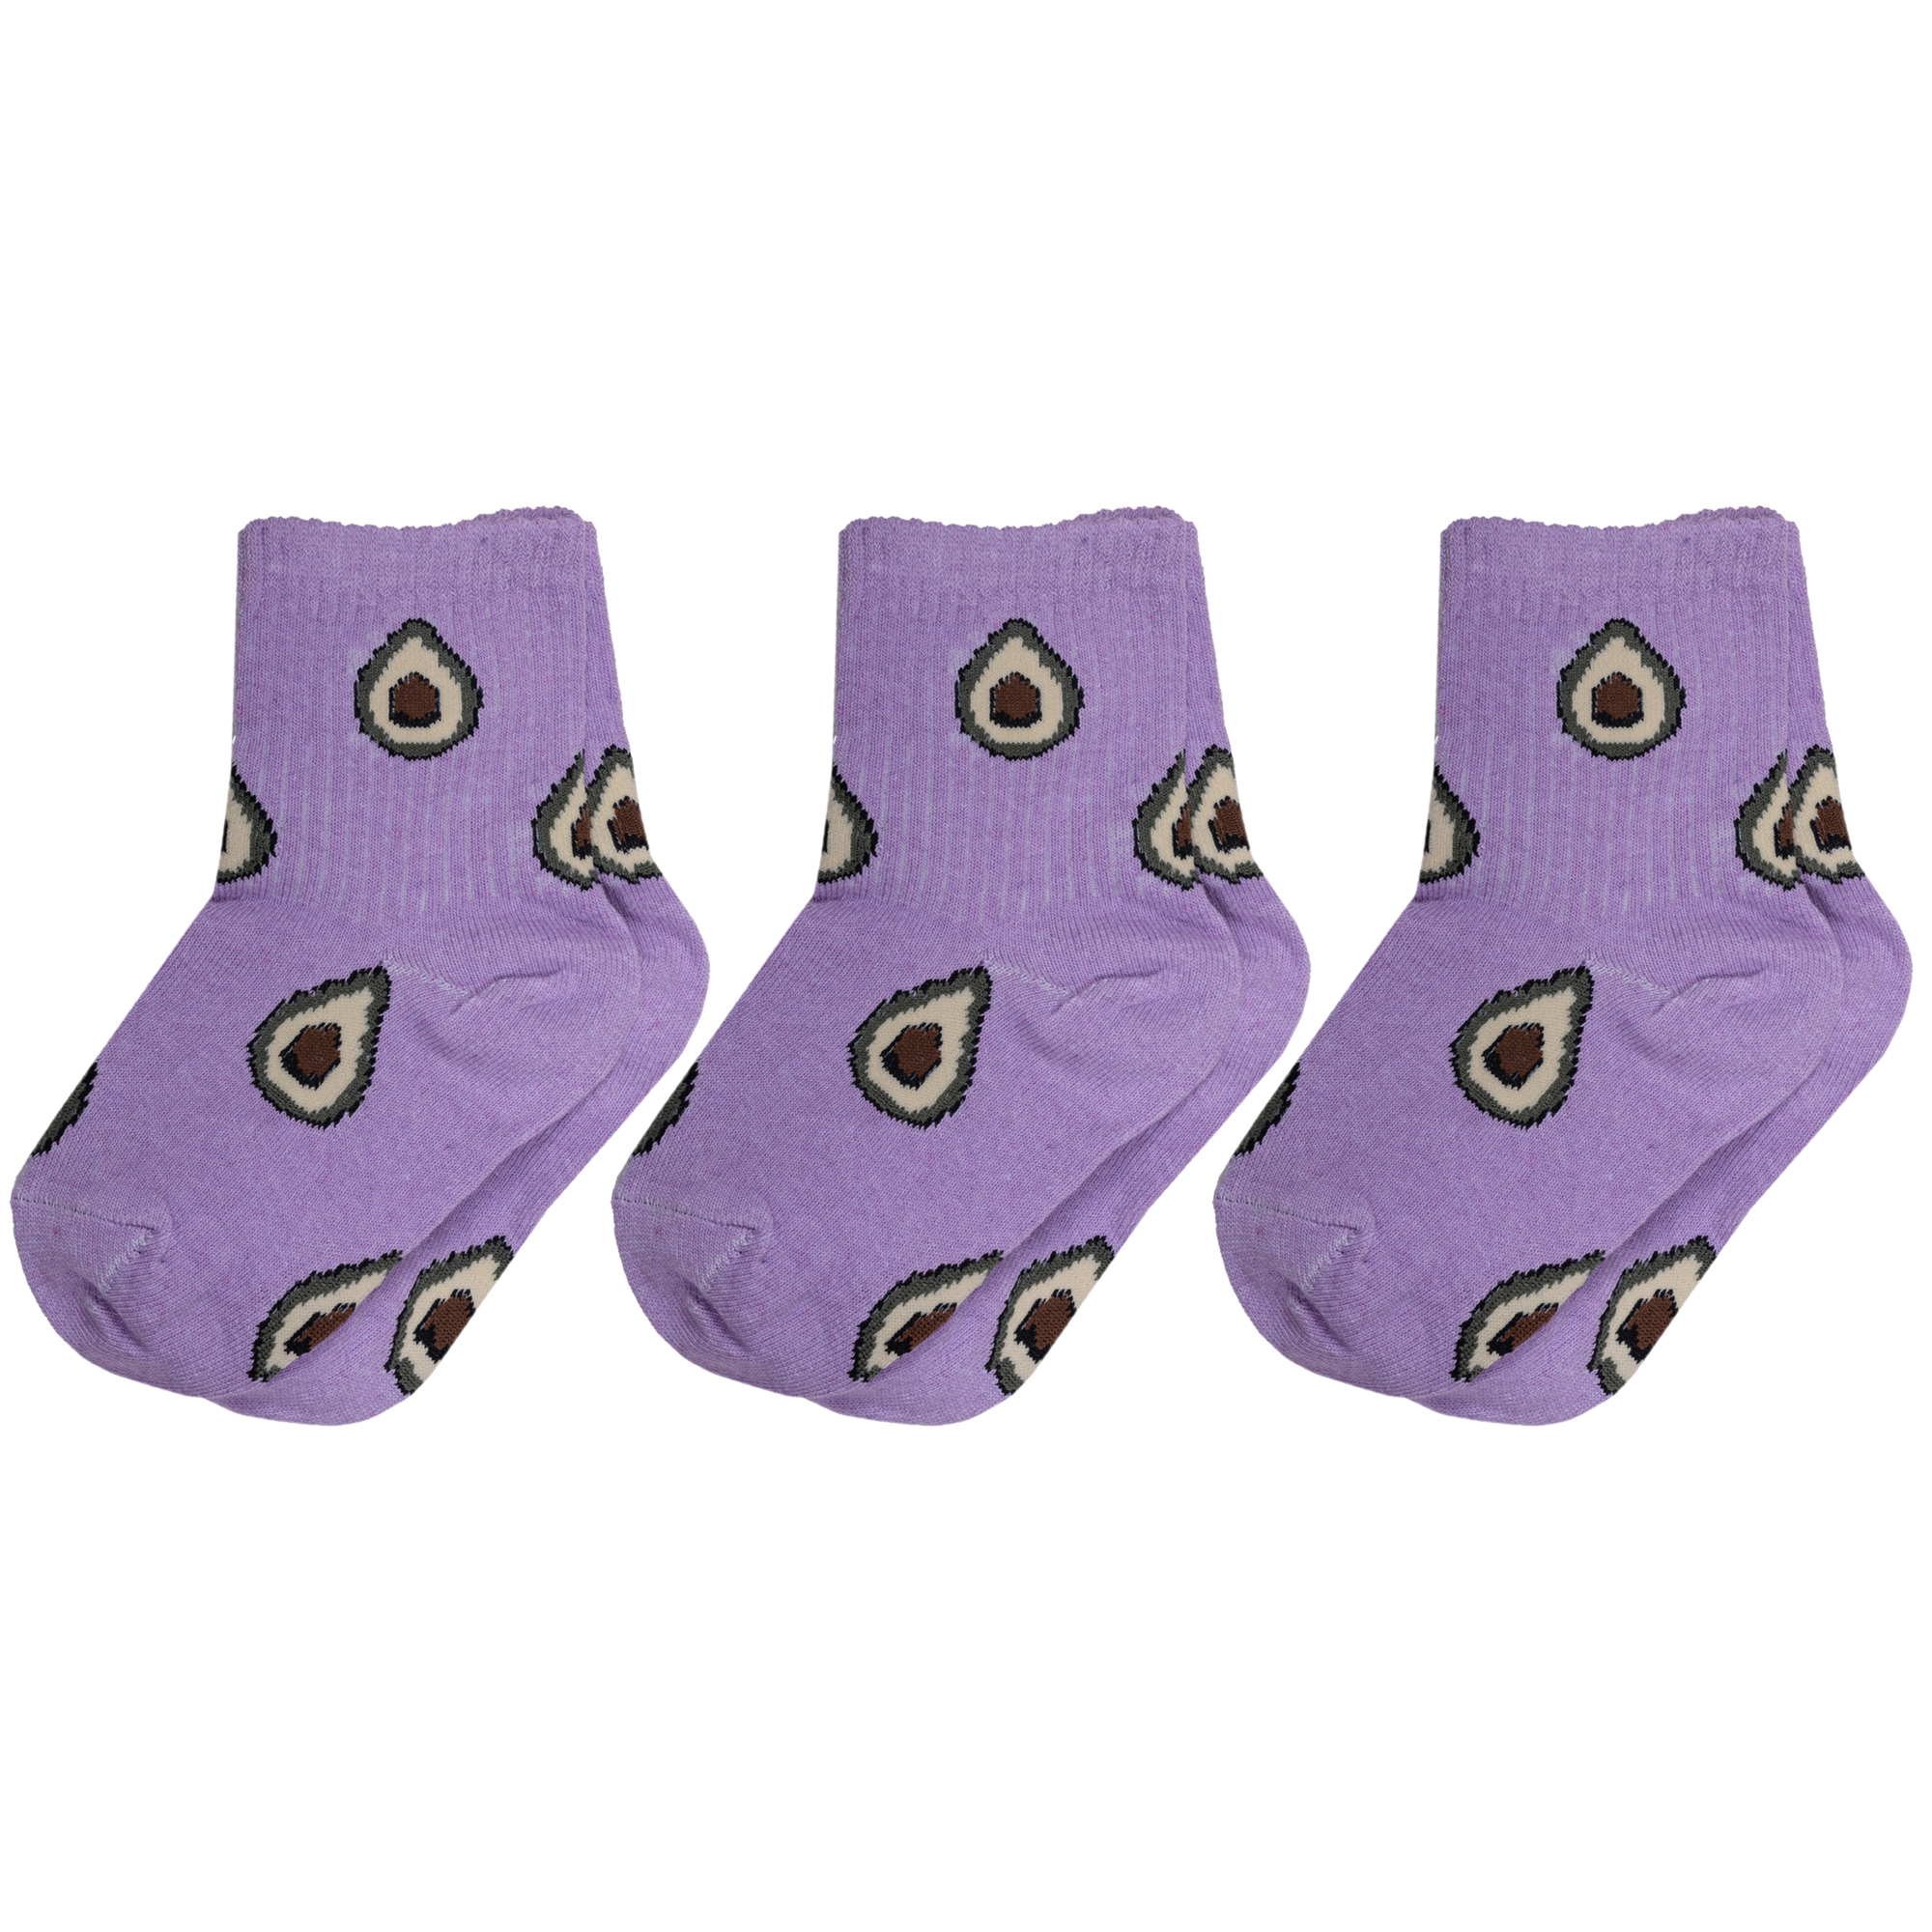 Носки для девочек Альтаир 3-А223 цв. фиолетовый; бежевый; зеленый; коричневый р. 26-28 носки детские conte kids sof tiki 2 пары 7с 92сп р 12 703 фиолетовый